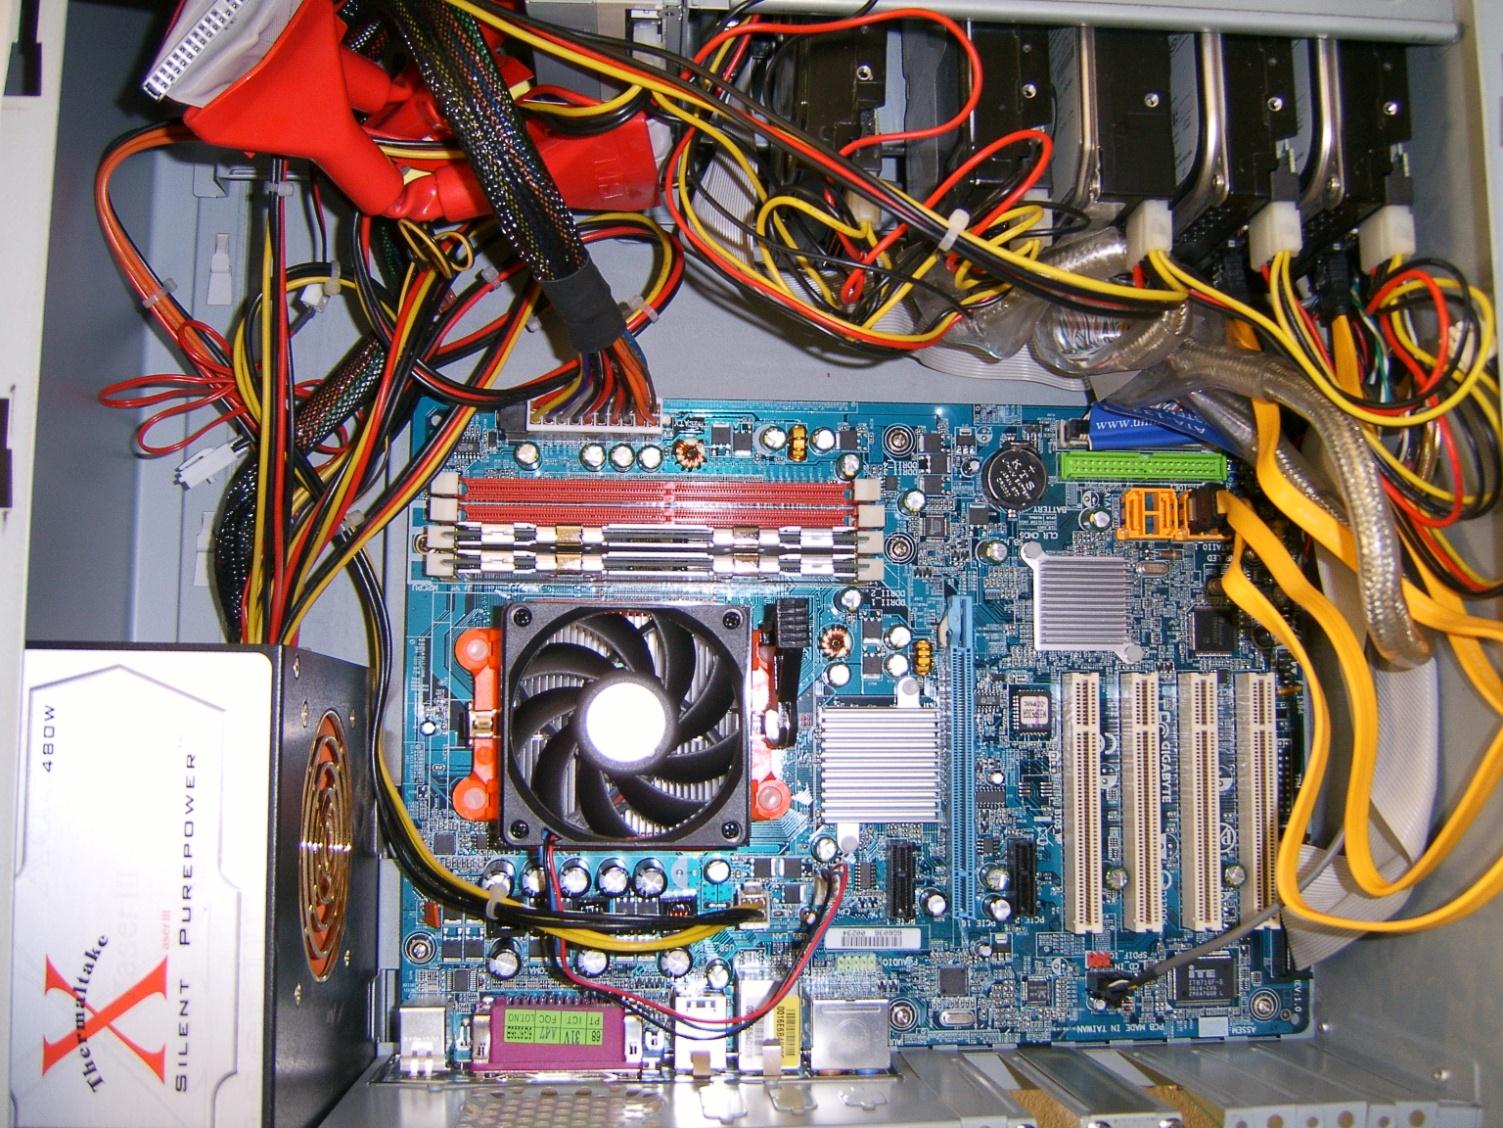 Μέσα στον Υπολογιστή Motherboard Disk drives RAM Processor under the fan and heat sink IDE SATA Power supply Keyboard, video, and other